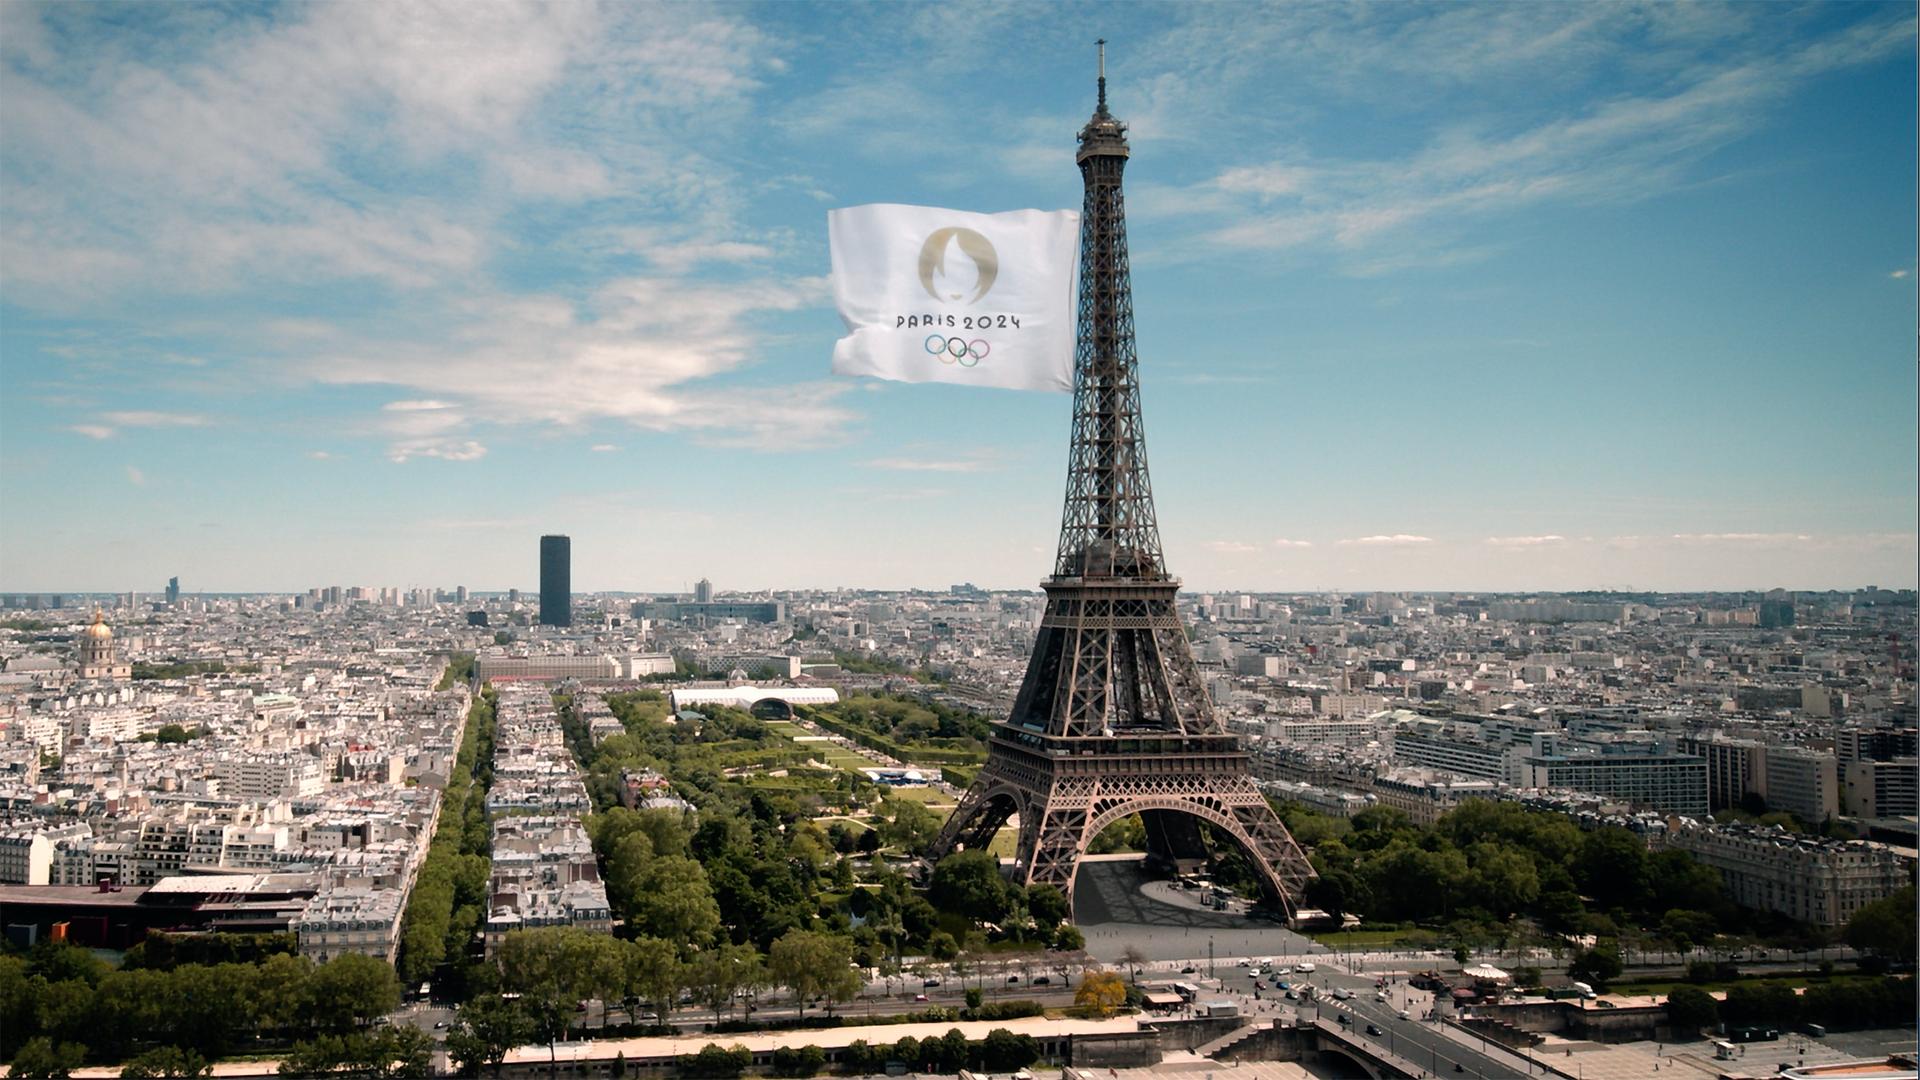 La tournée des drapeaux des Jeux Olympiques de Paris 2024 arrive